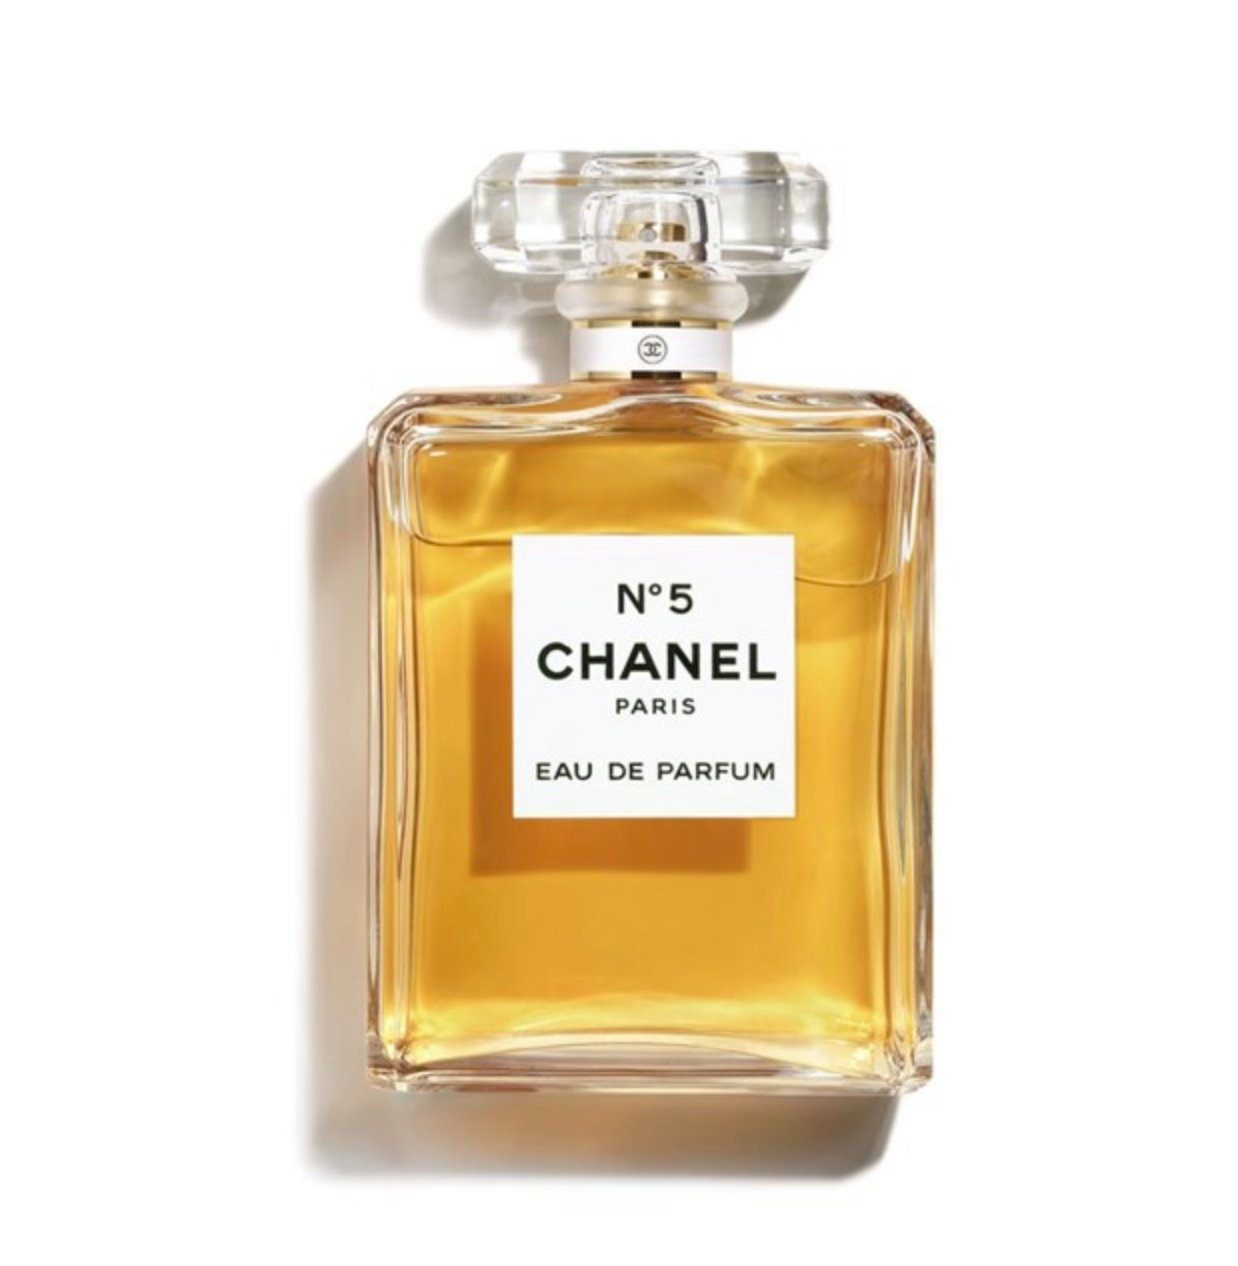 CHANEL DE de N°5 PARFUM Parfum EAU Eau